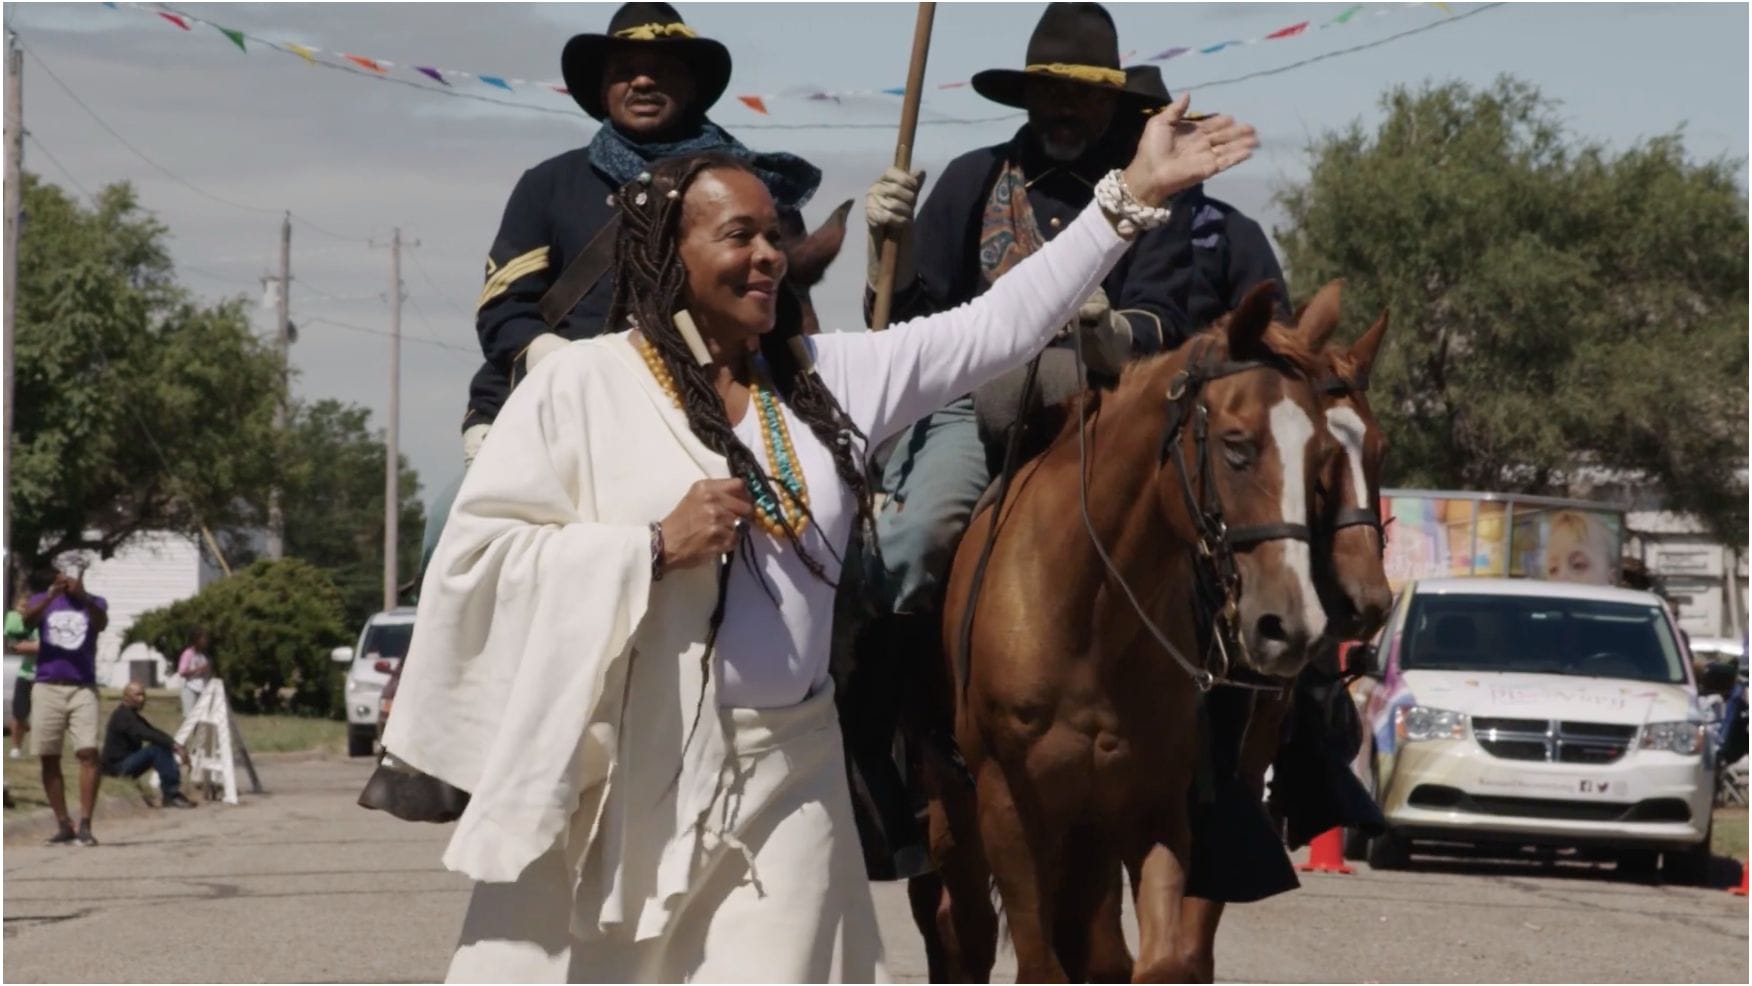 A woman riding a horse in a parade.